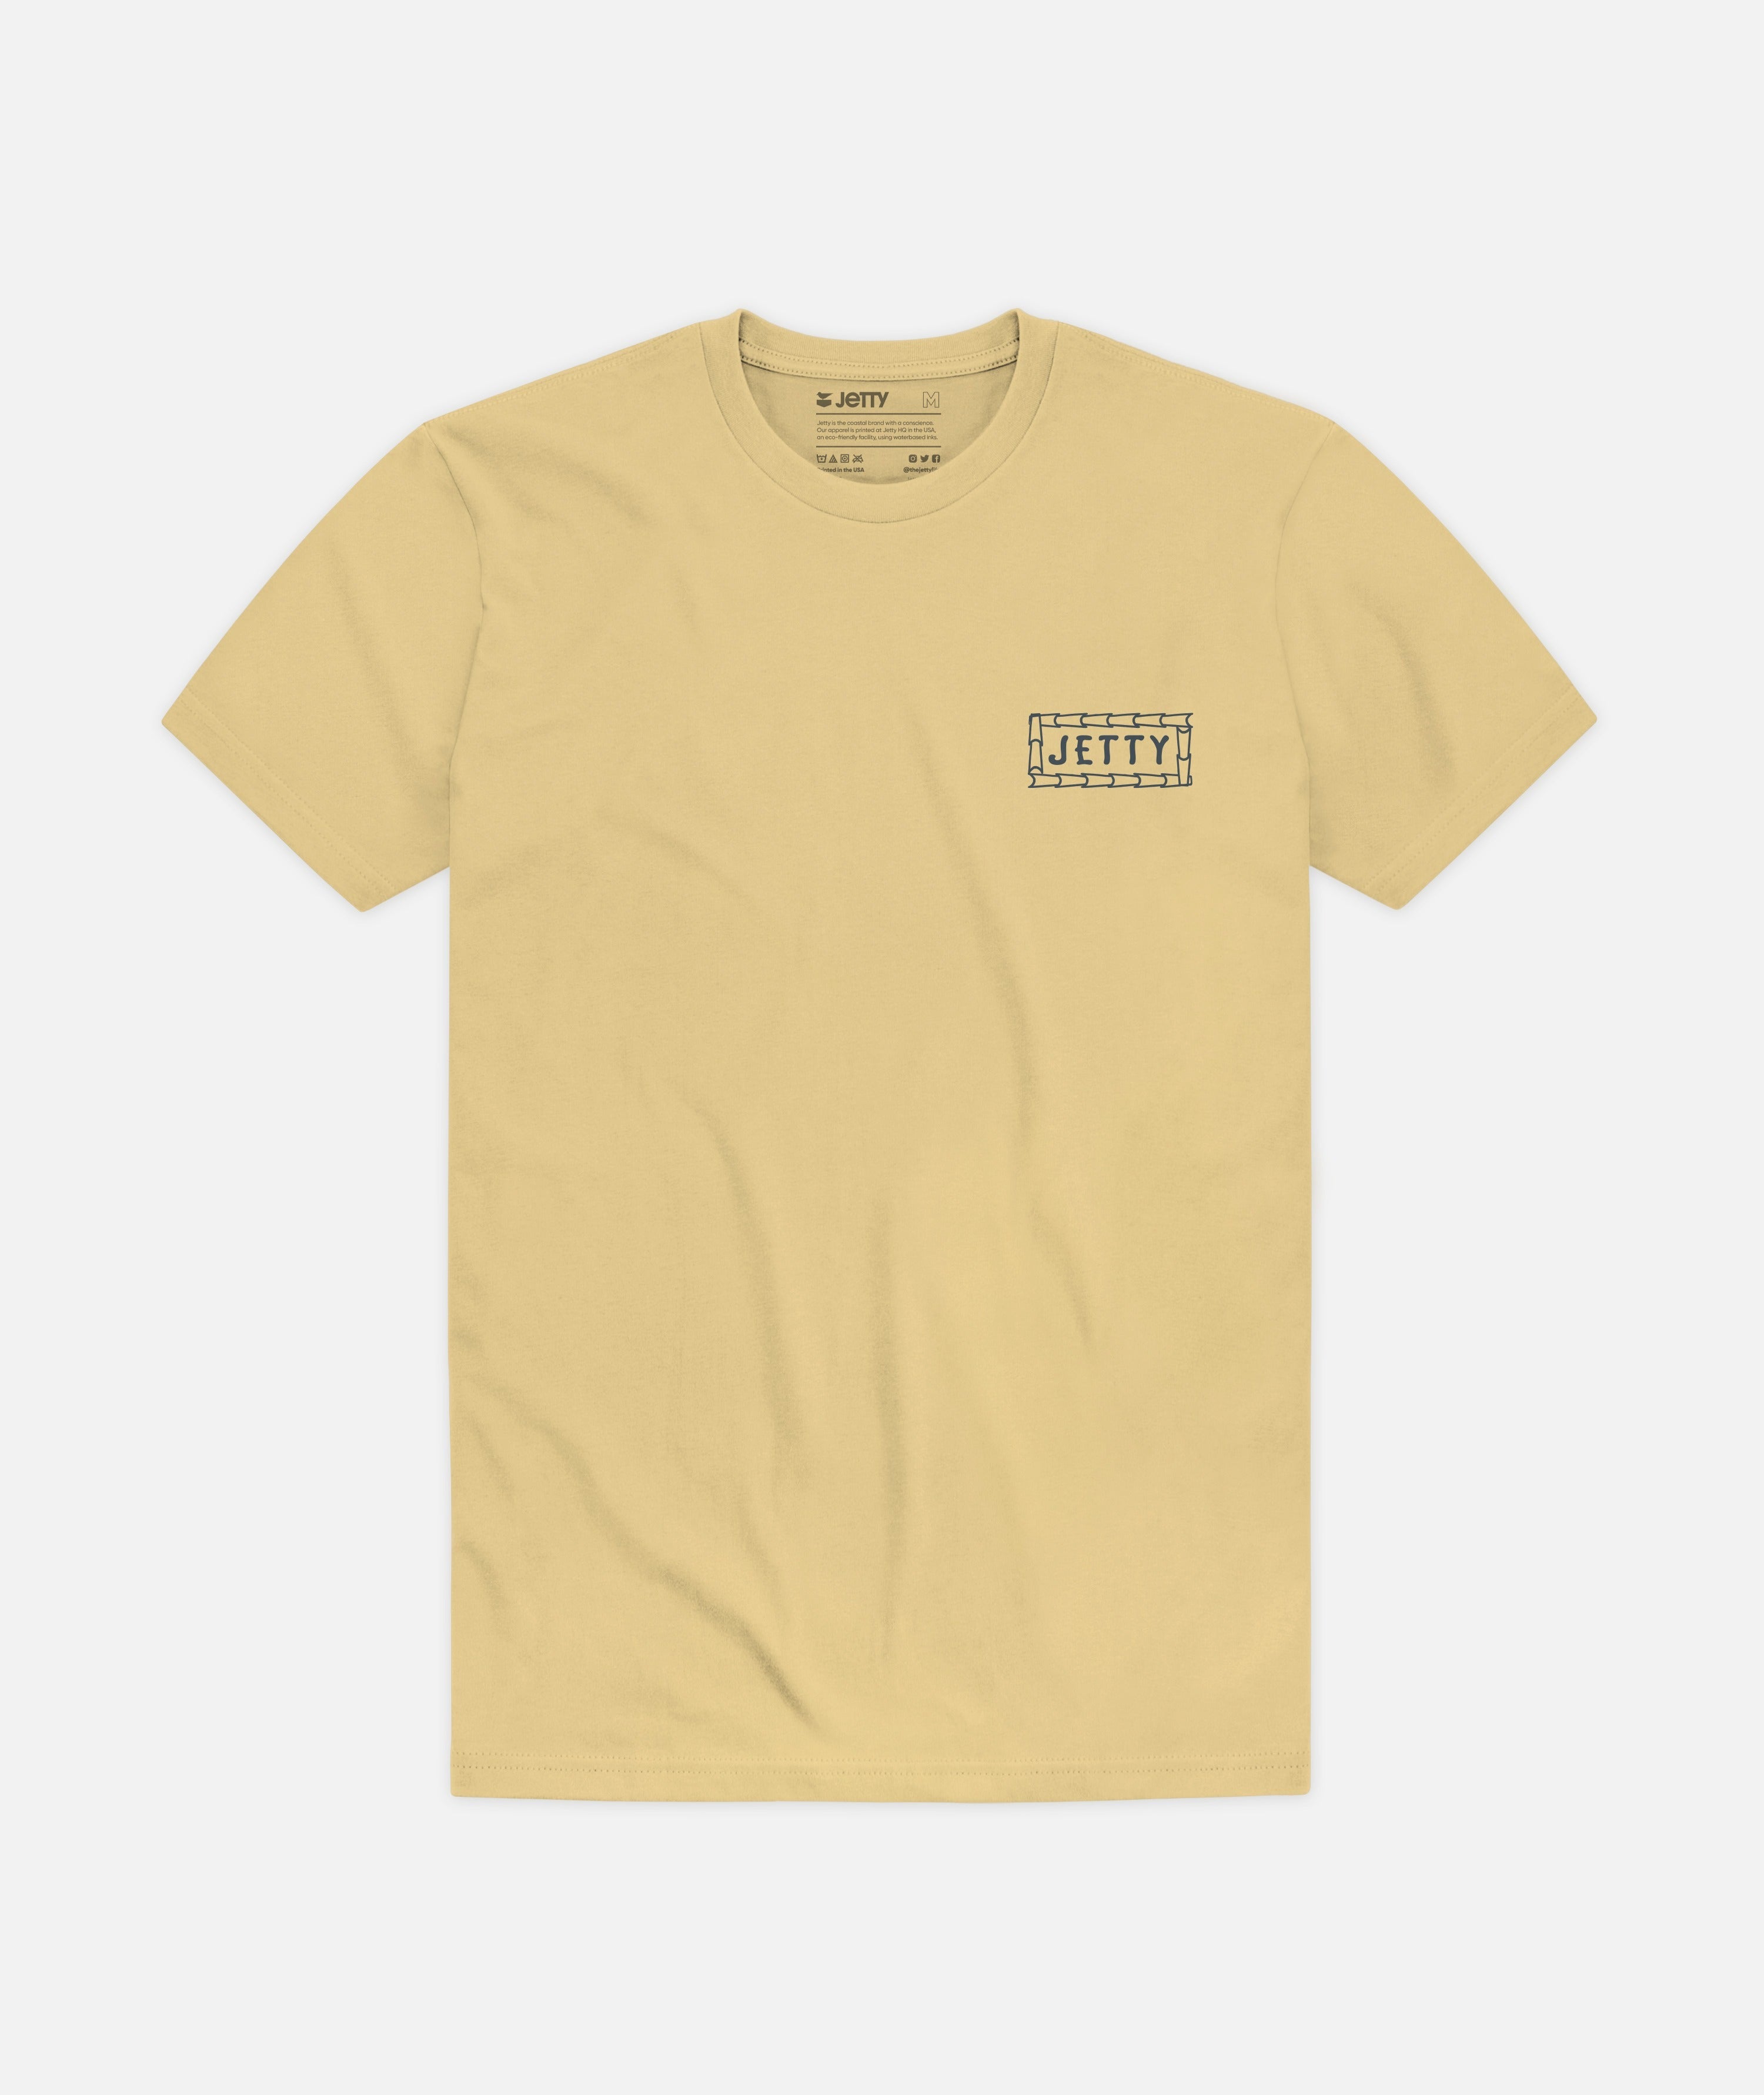 Jetty Billfish Tee Shirt - 88 Gear